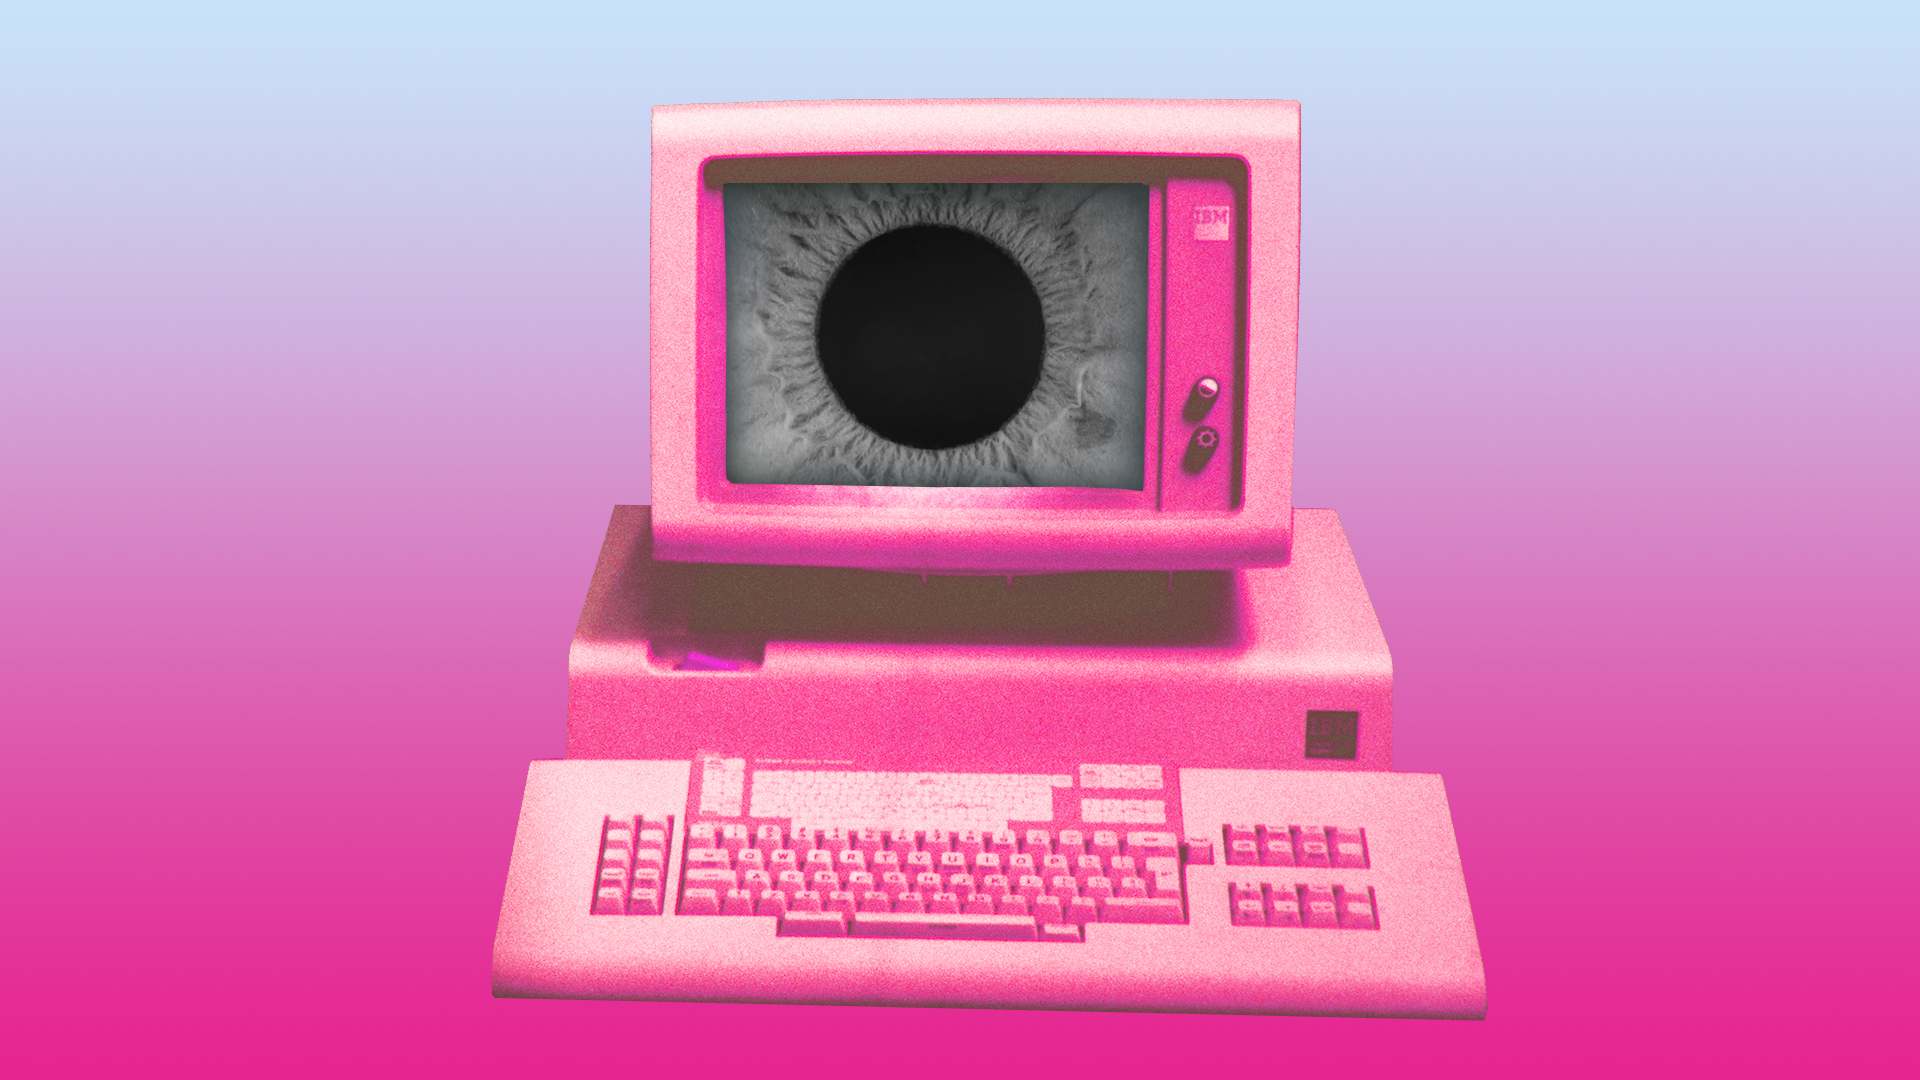 Un vieil IBM PC recoloré en rose avec un œil sinistre sur l'écran.